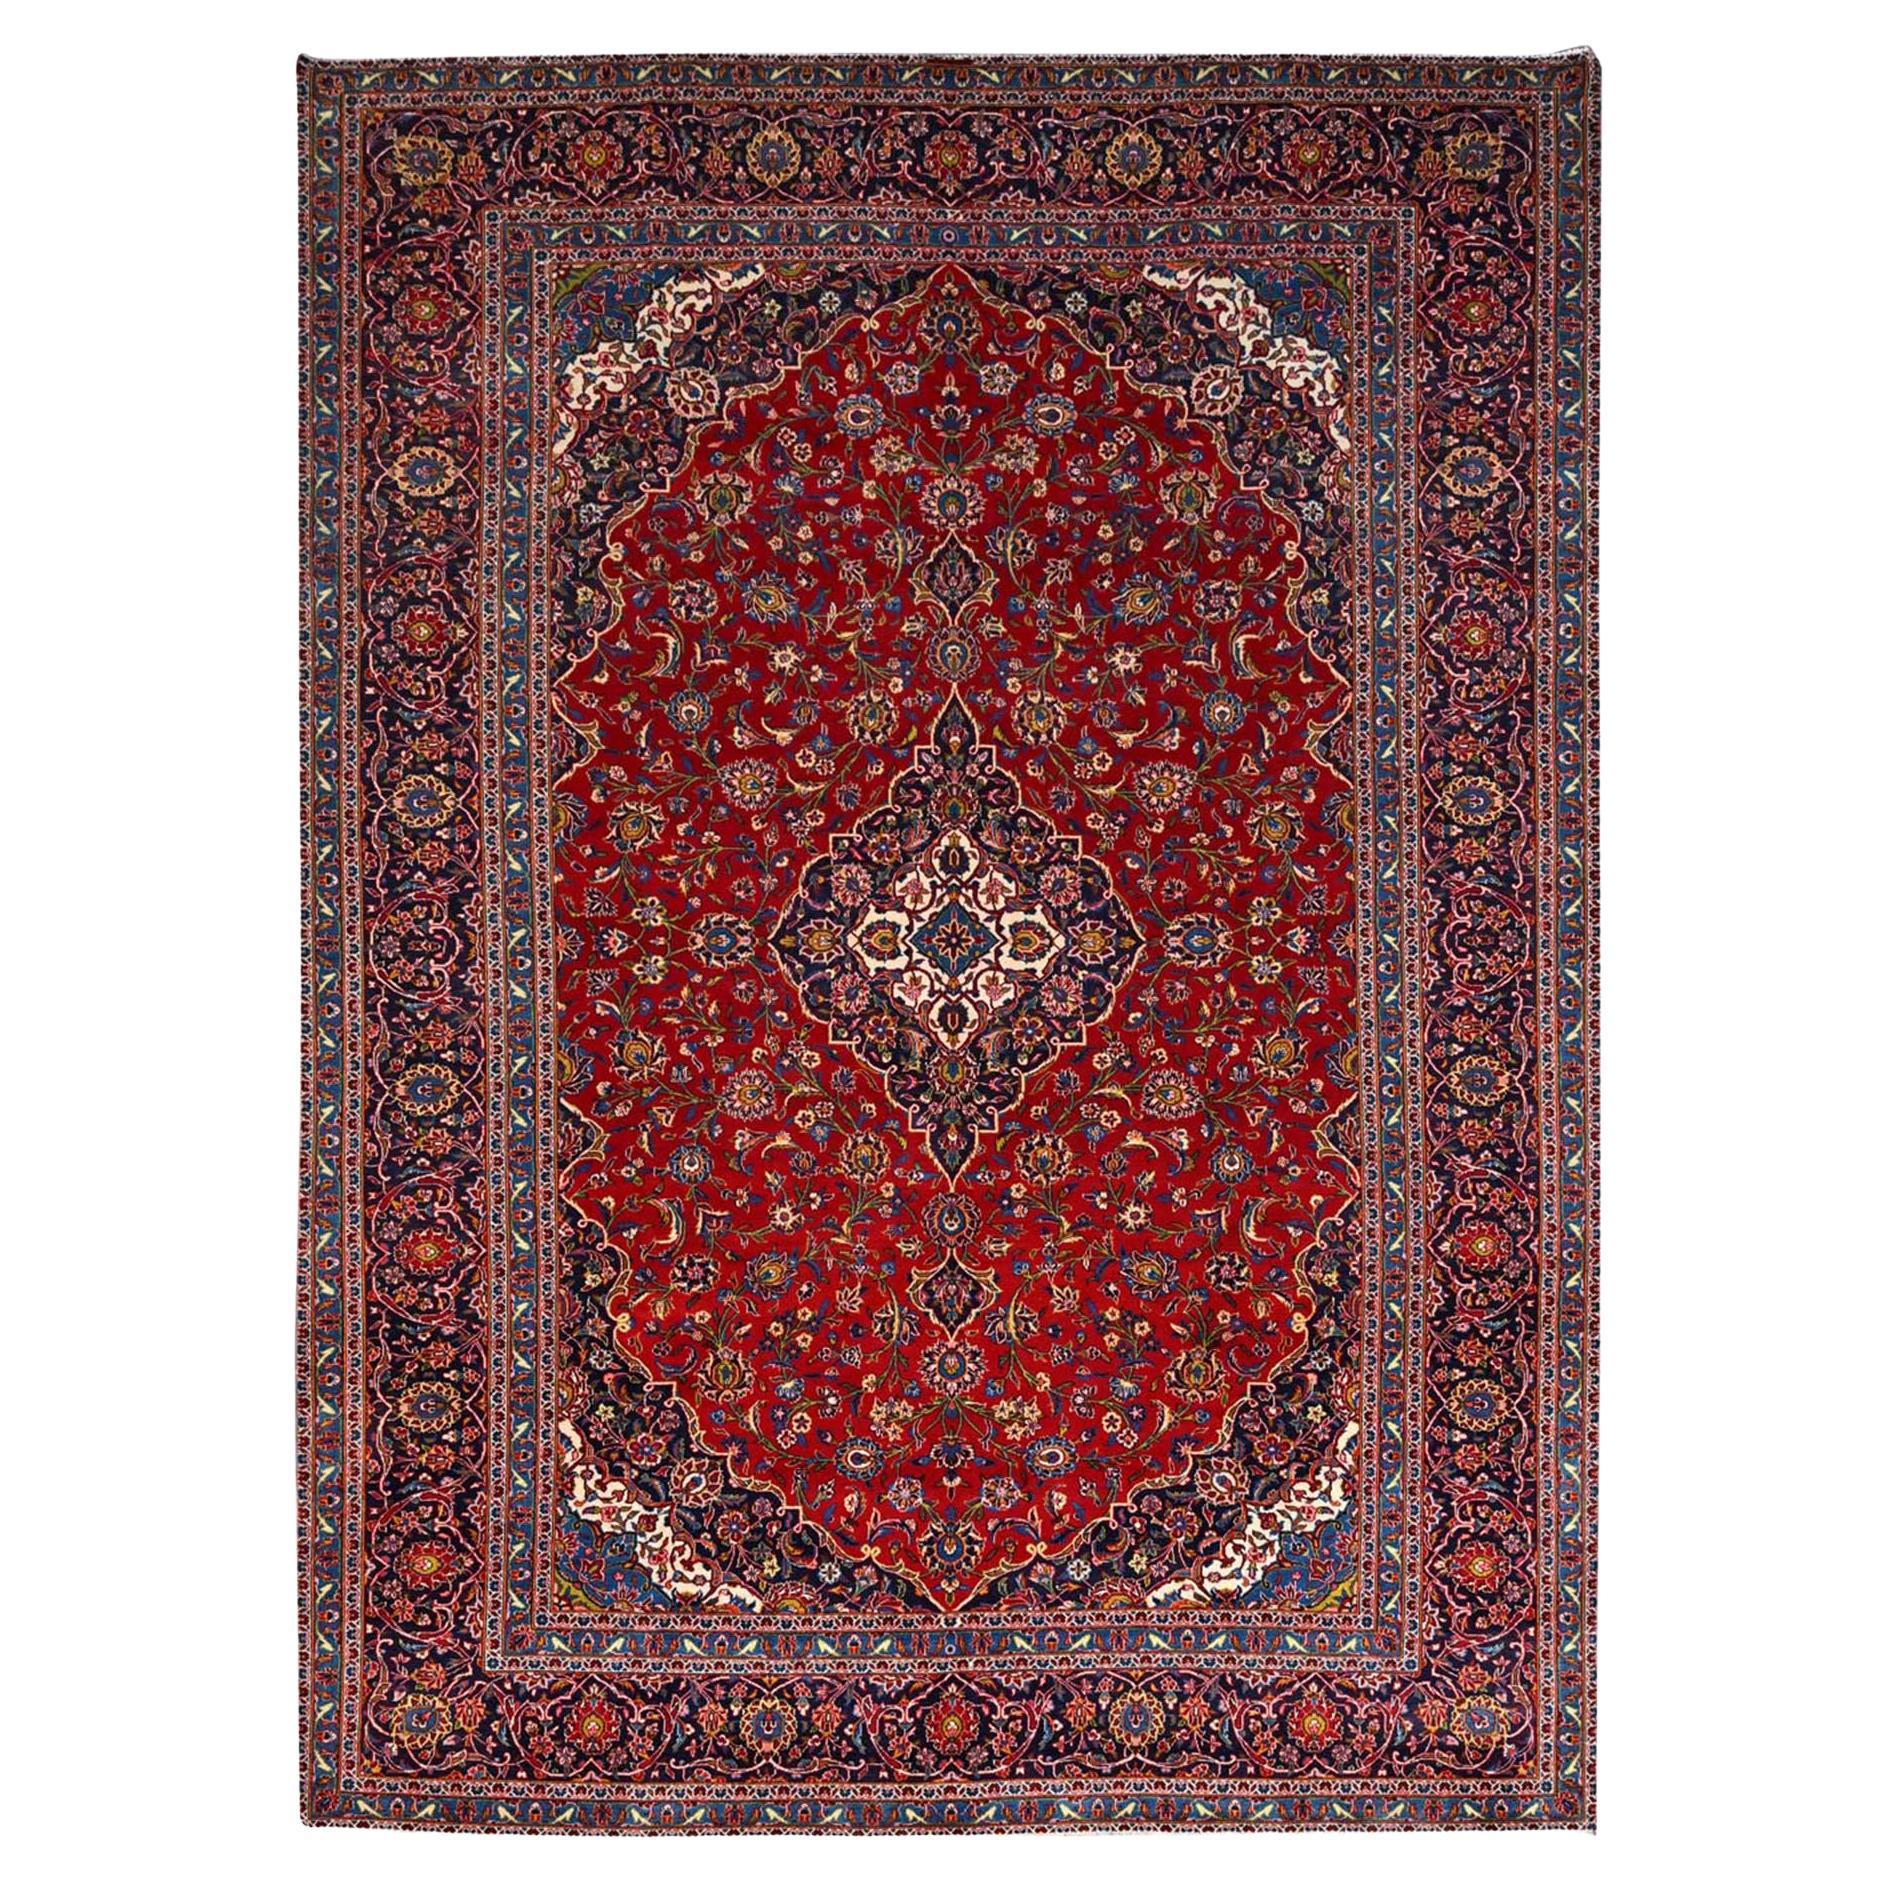 Vintage Persischer Kashan-Teppich aus reiner Wolle mit Medaillonmuster 200 KPSI, handgeknüpft, rot, Vintage